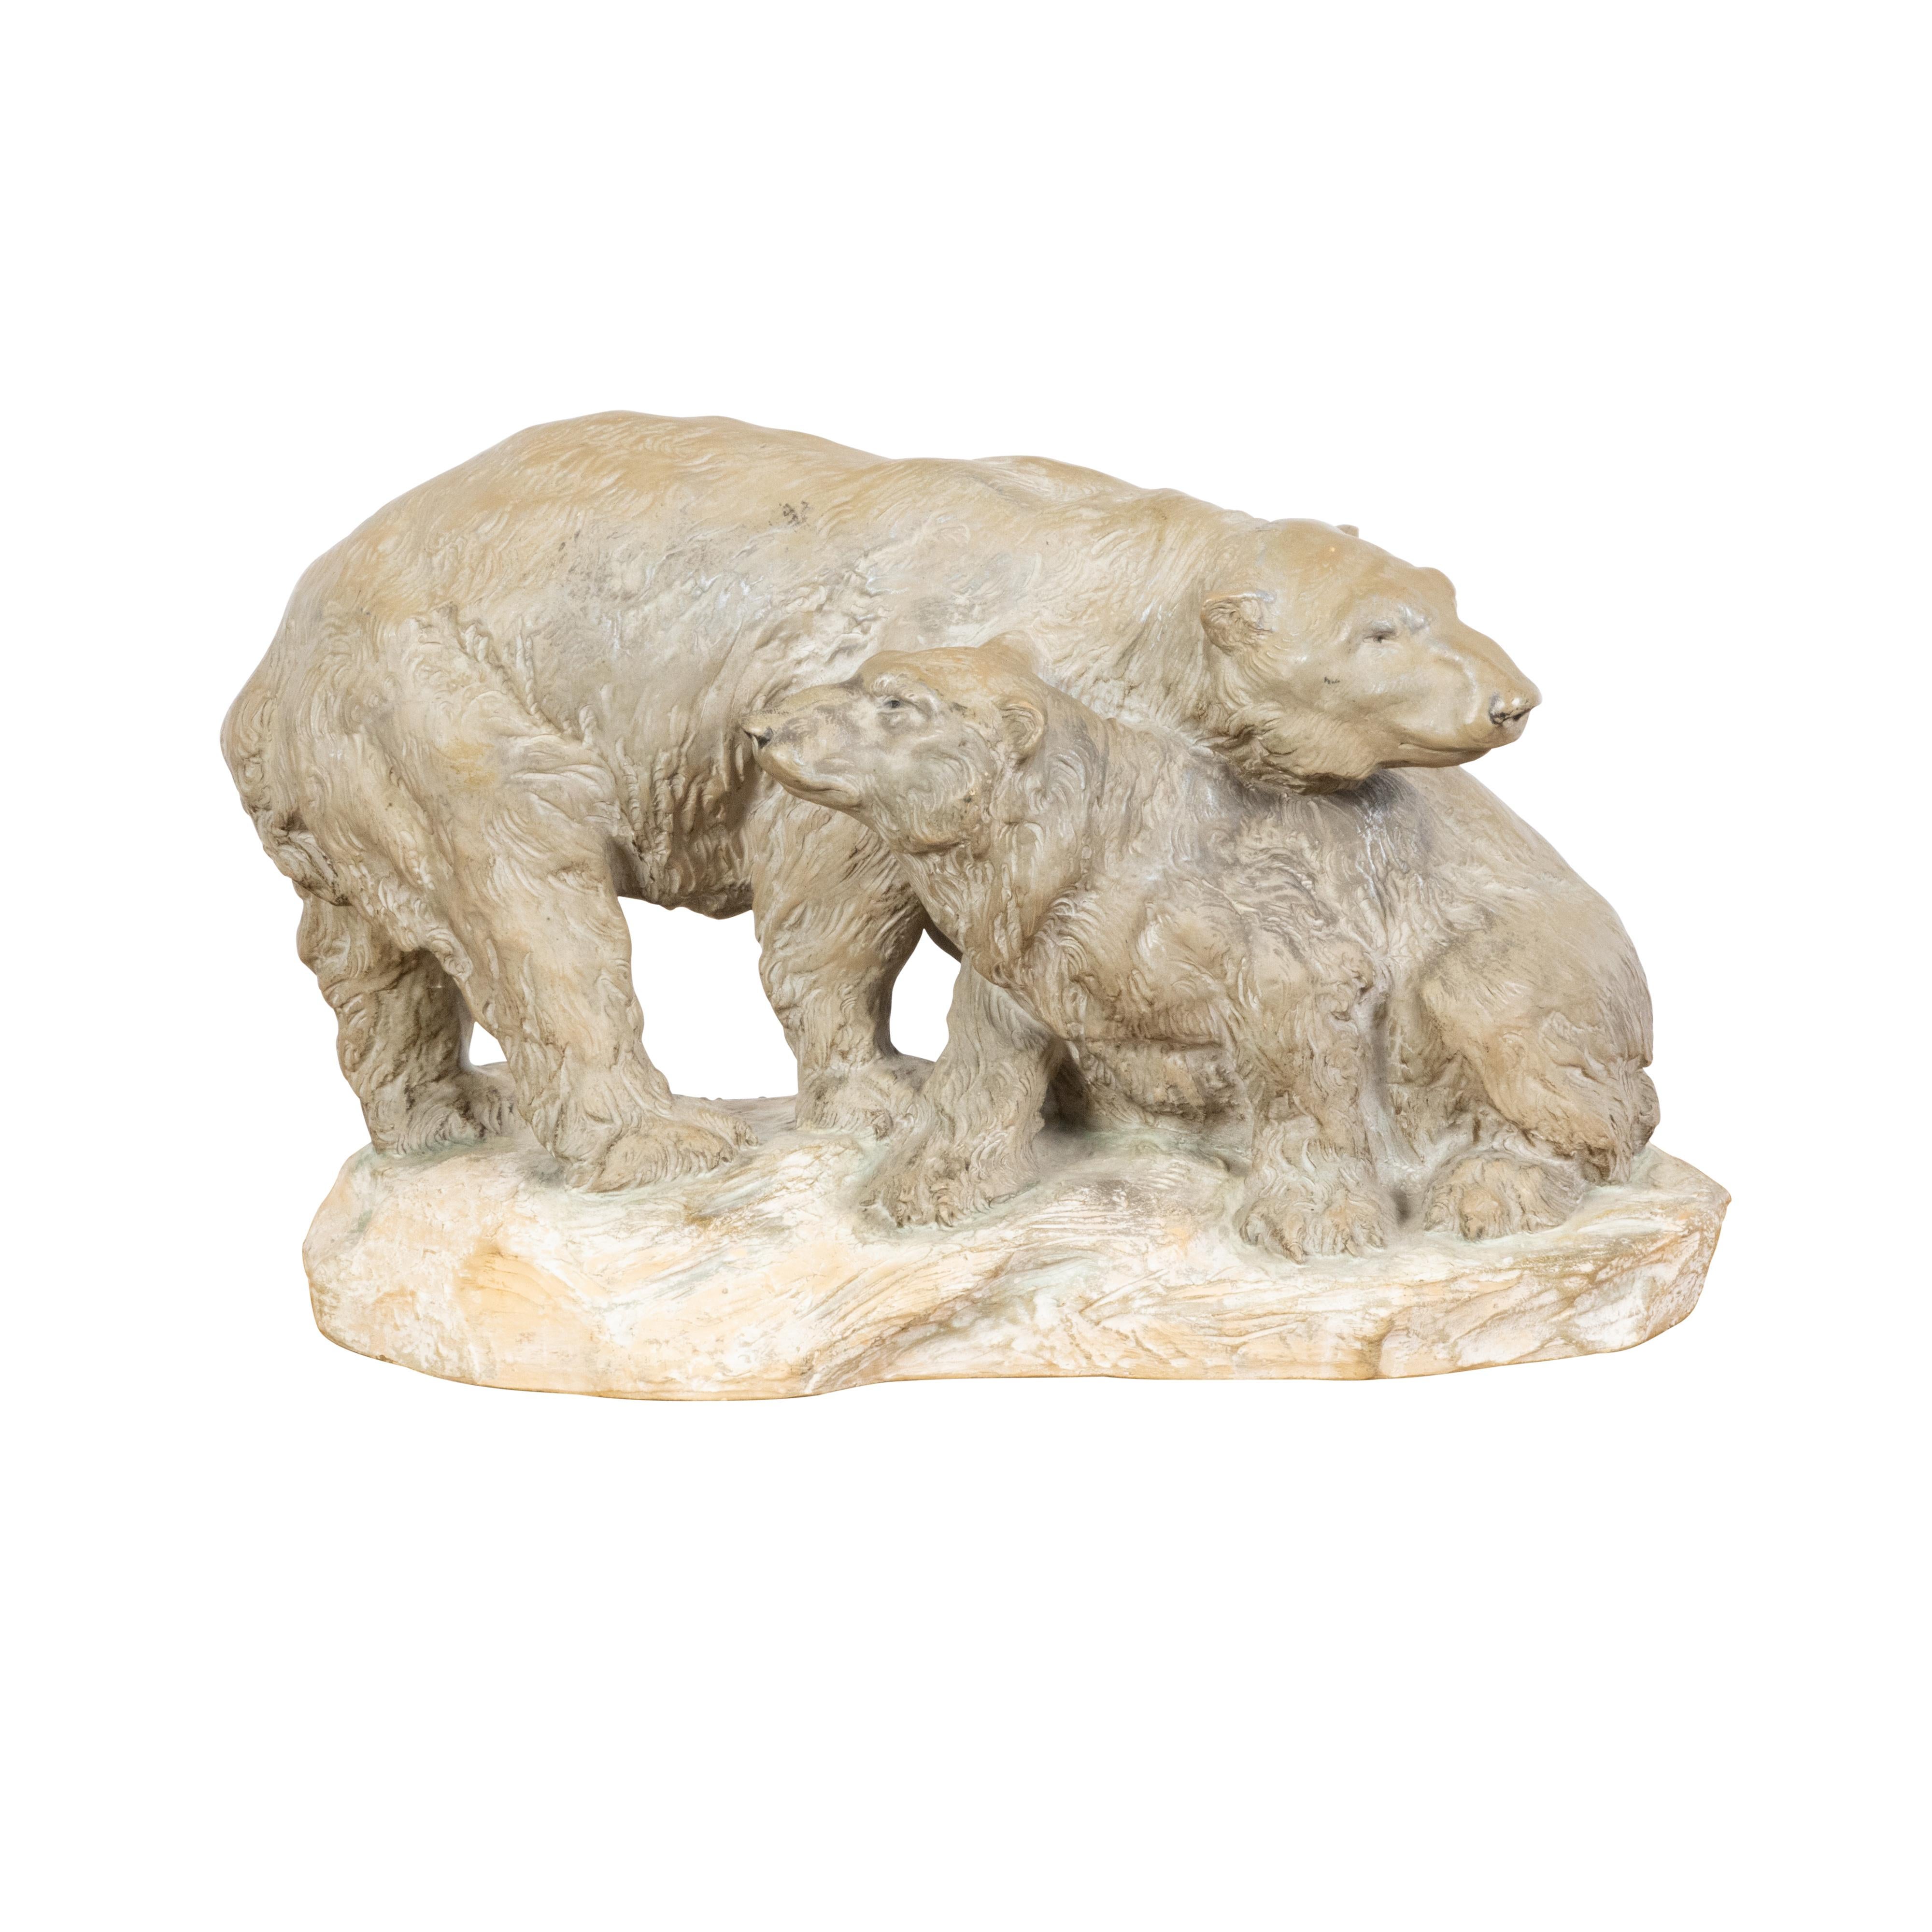 Sculpture continentale du milieu du siècle dernier représentant deux ours sur une base